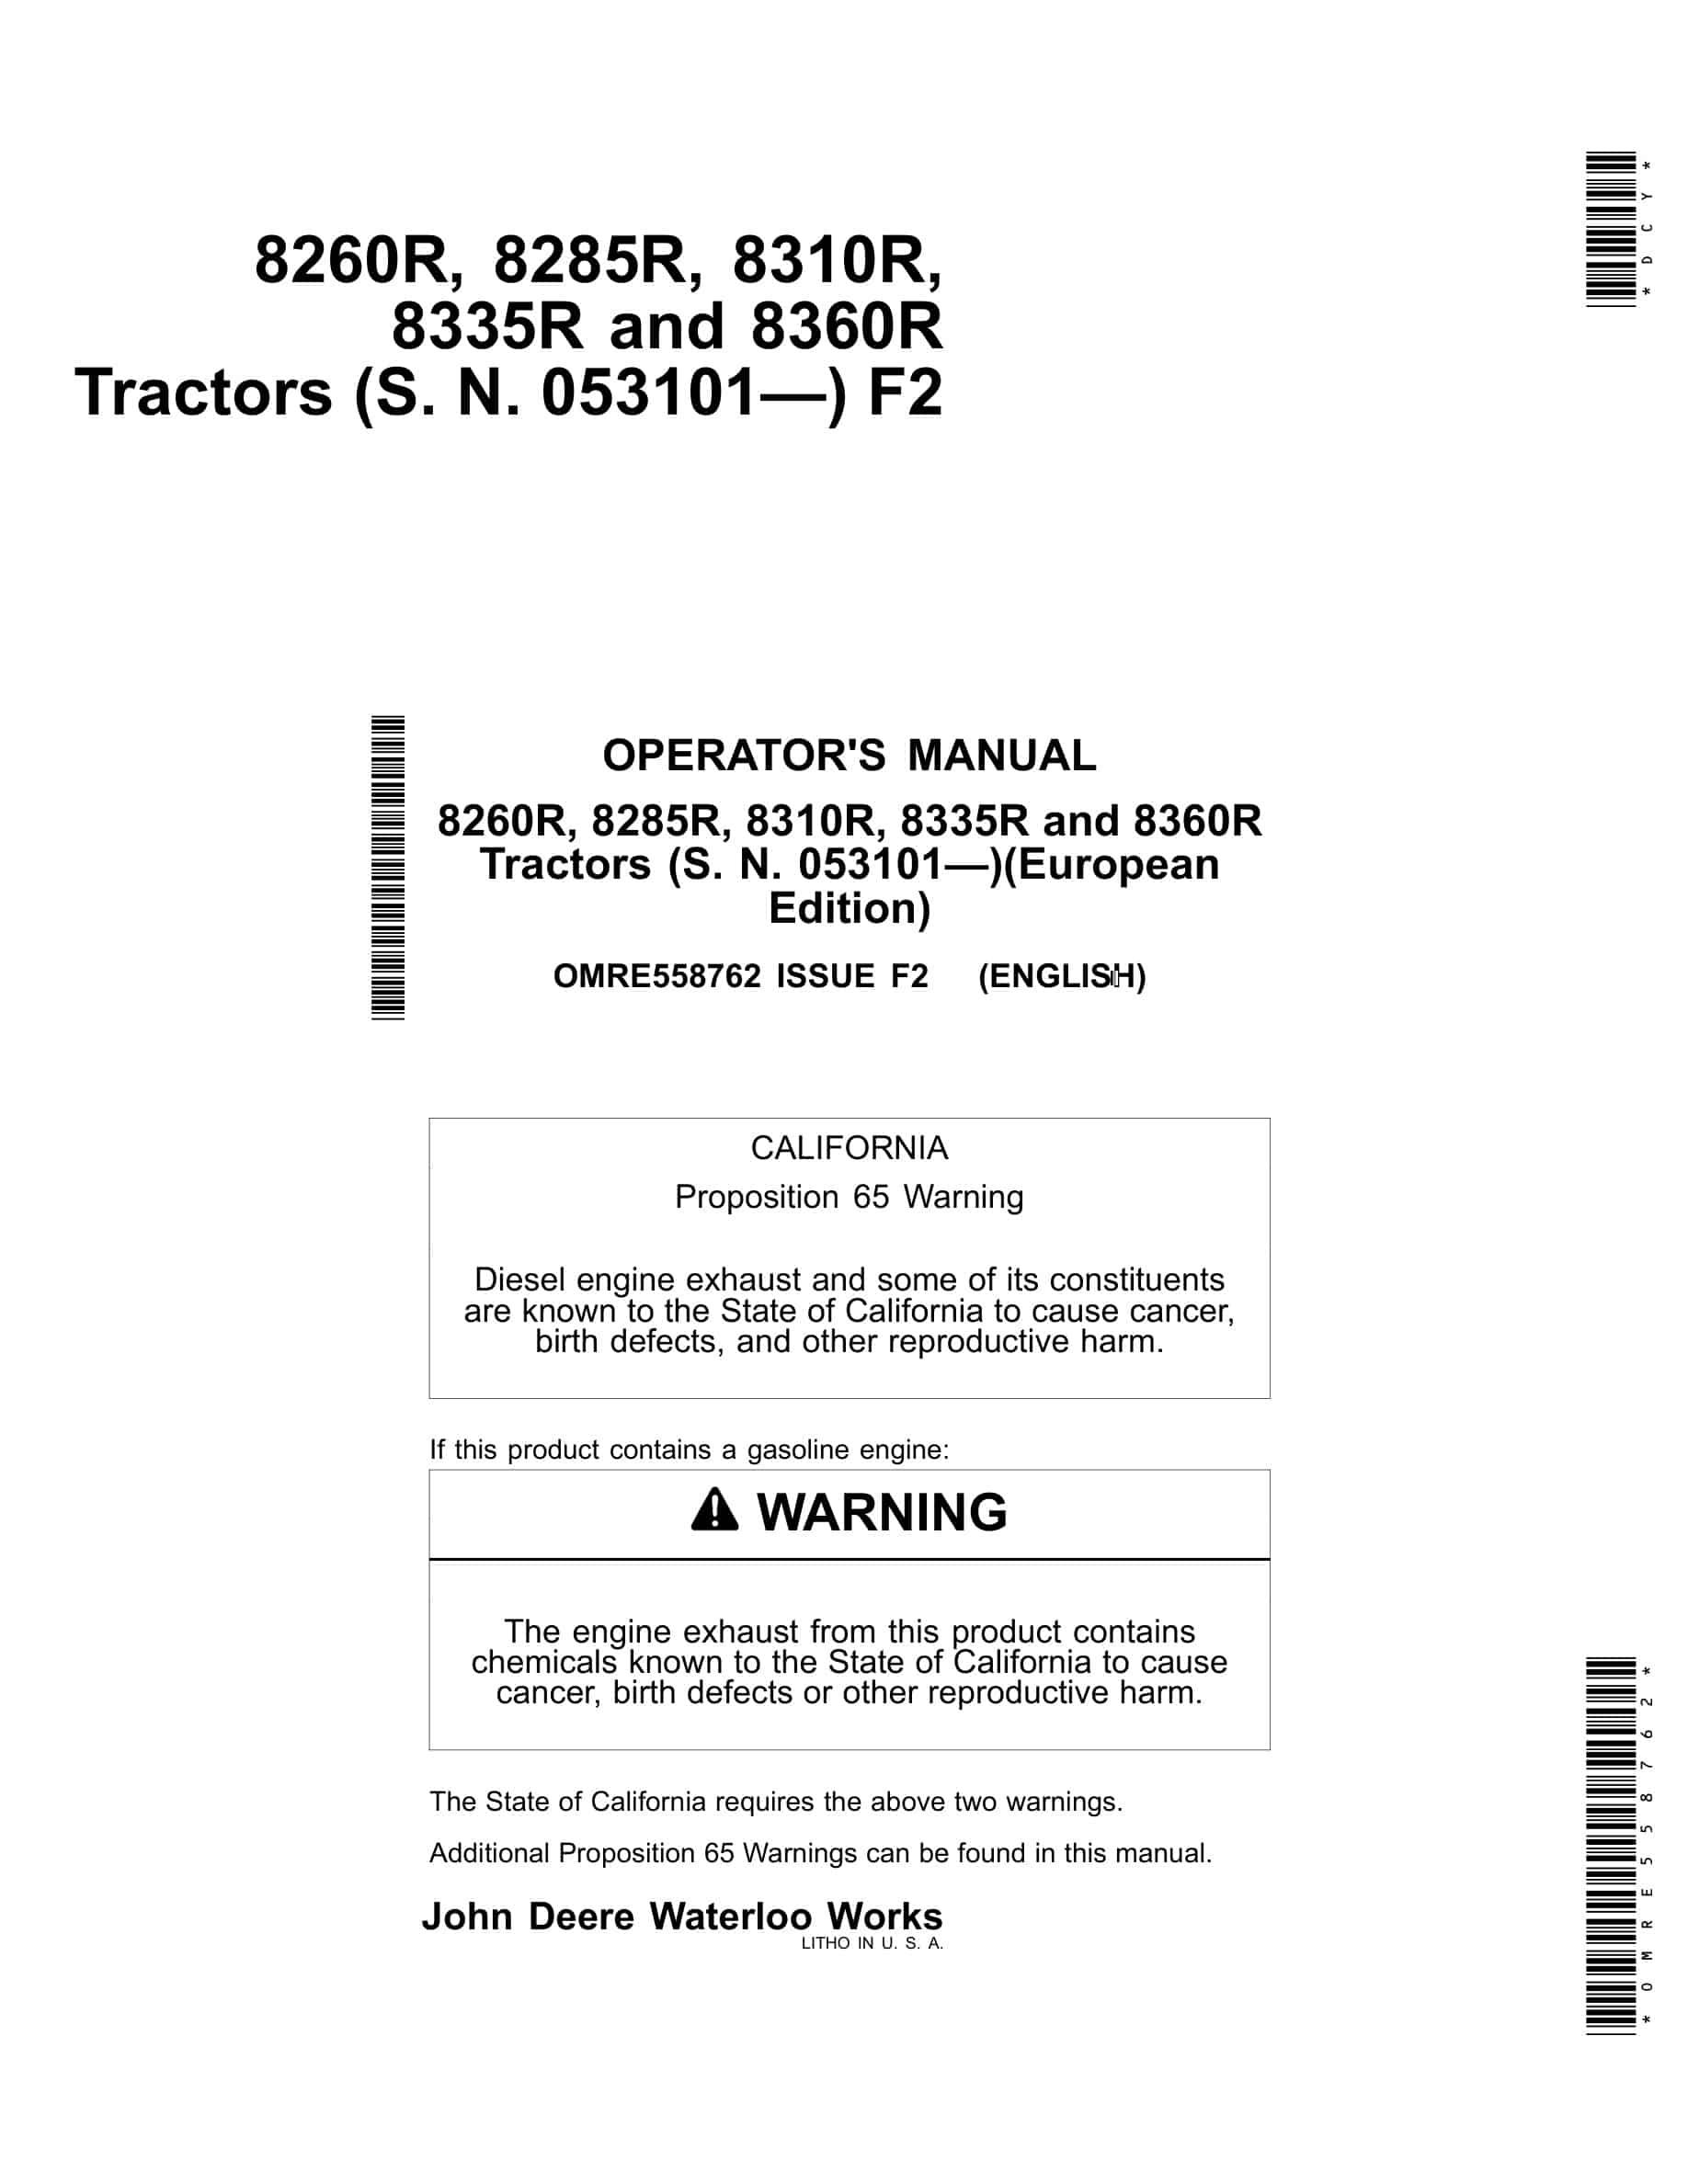 John Deere 8260r, 8285r, 8310r, 8335r And 8360r Tractors Operator Manuals OMRE558762-1